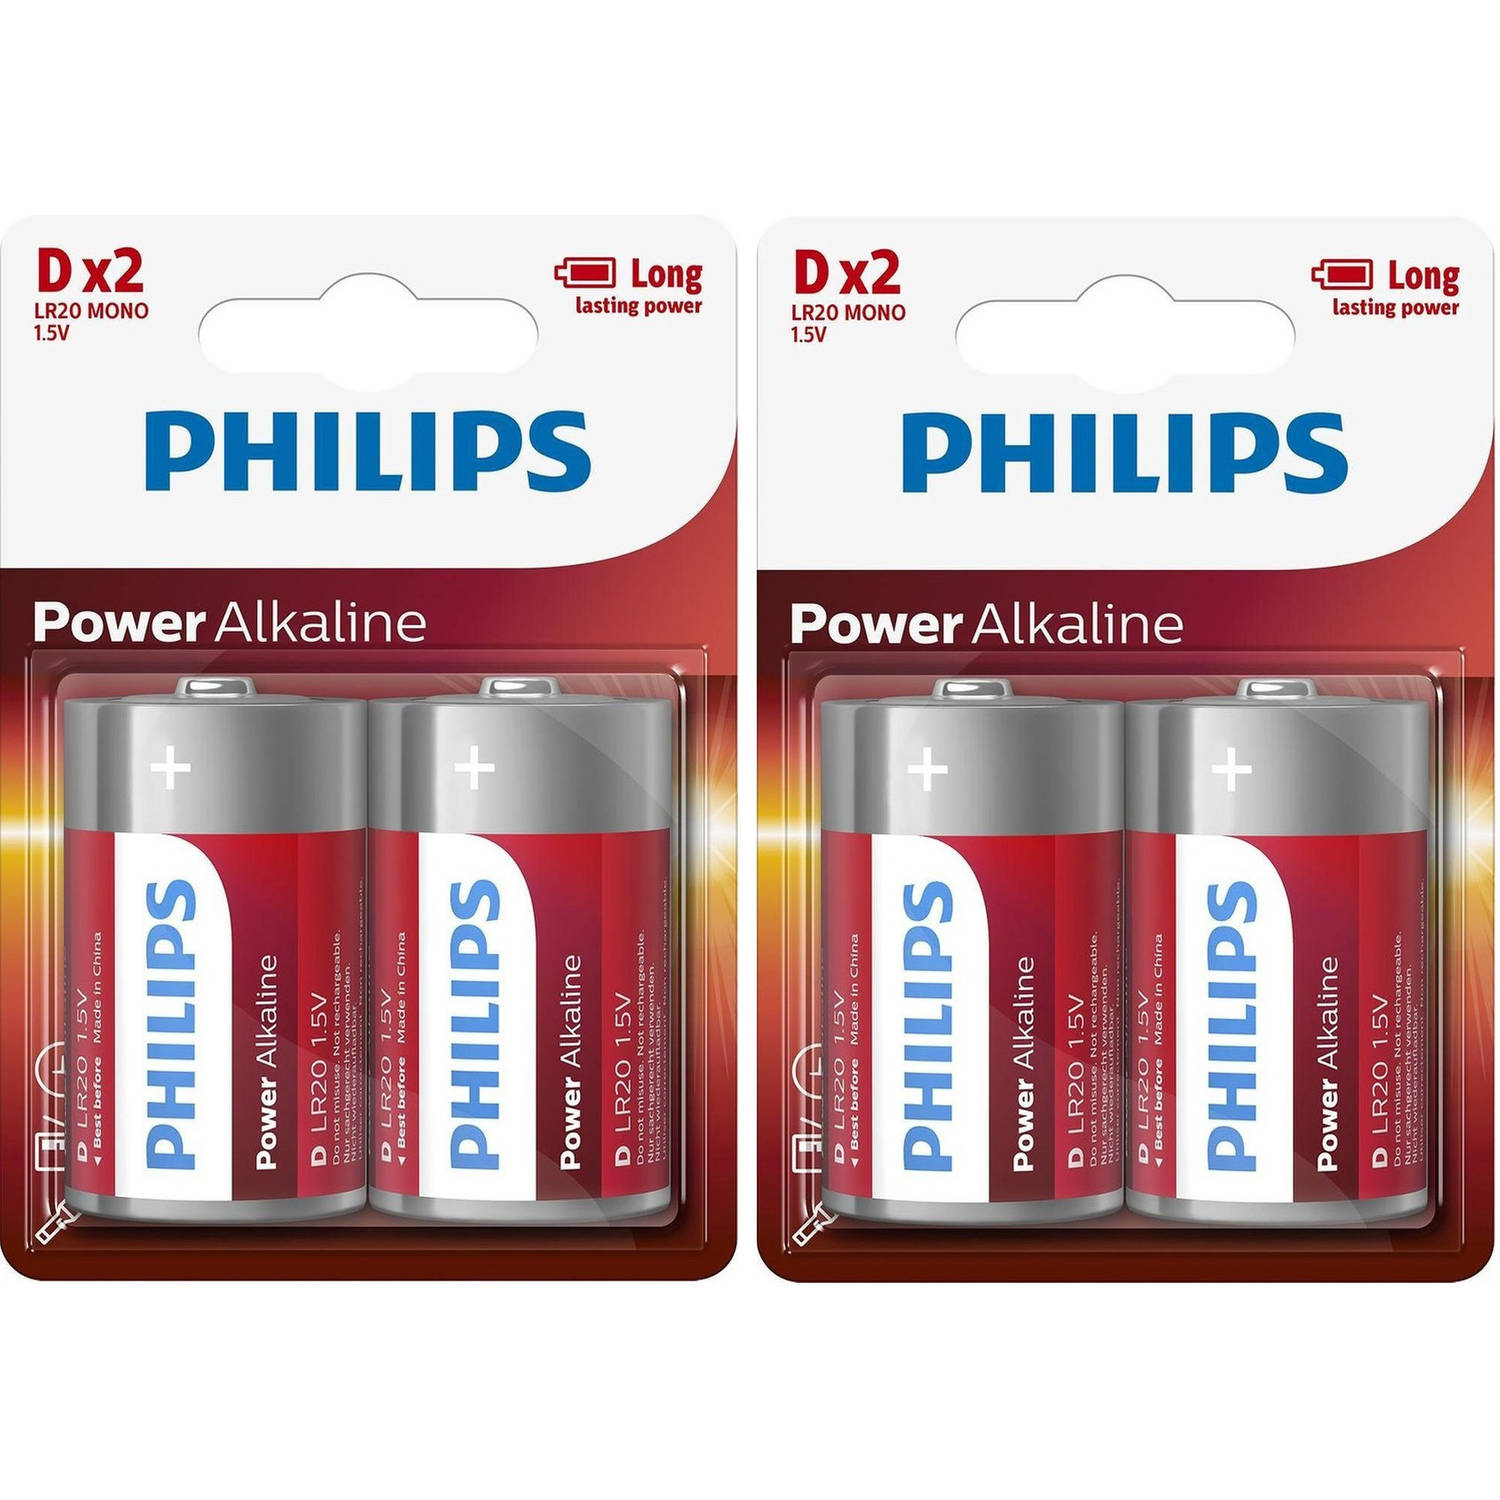 4x Phillips batterijen R20 D long lasting - Batterijen